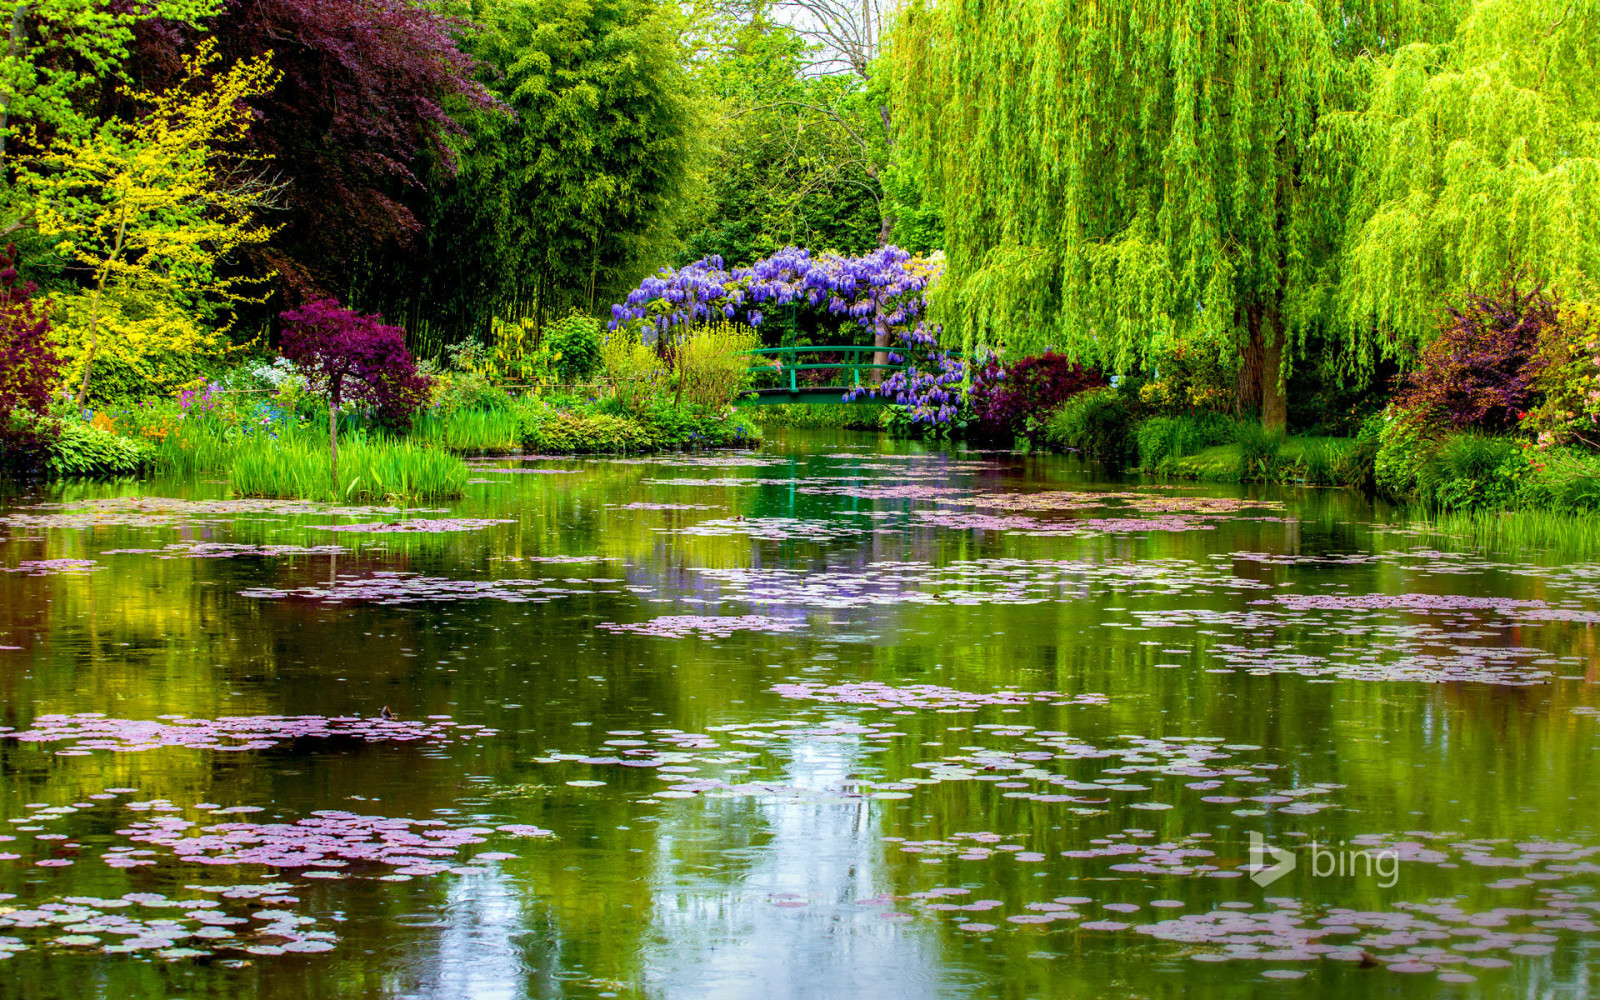 弹簧, 法国, 桥, 池塘, 诺曼底, 吉维尼, 莫奈的花园